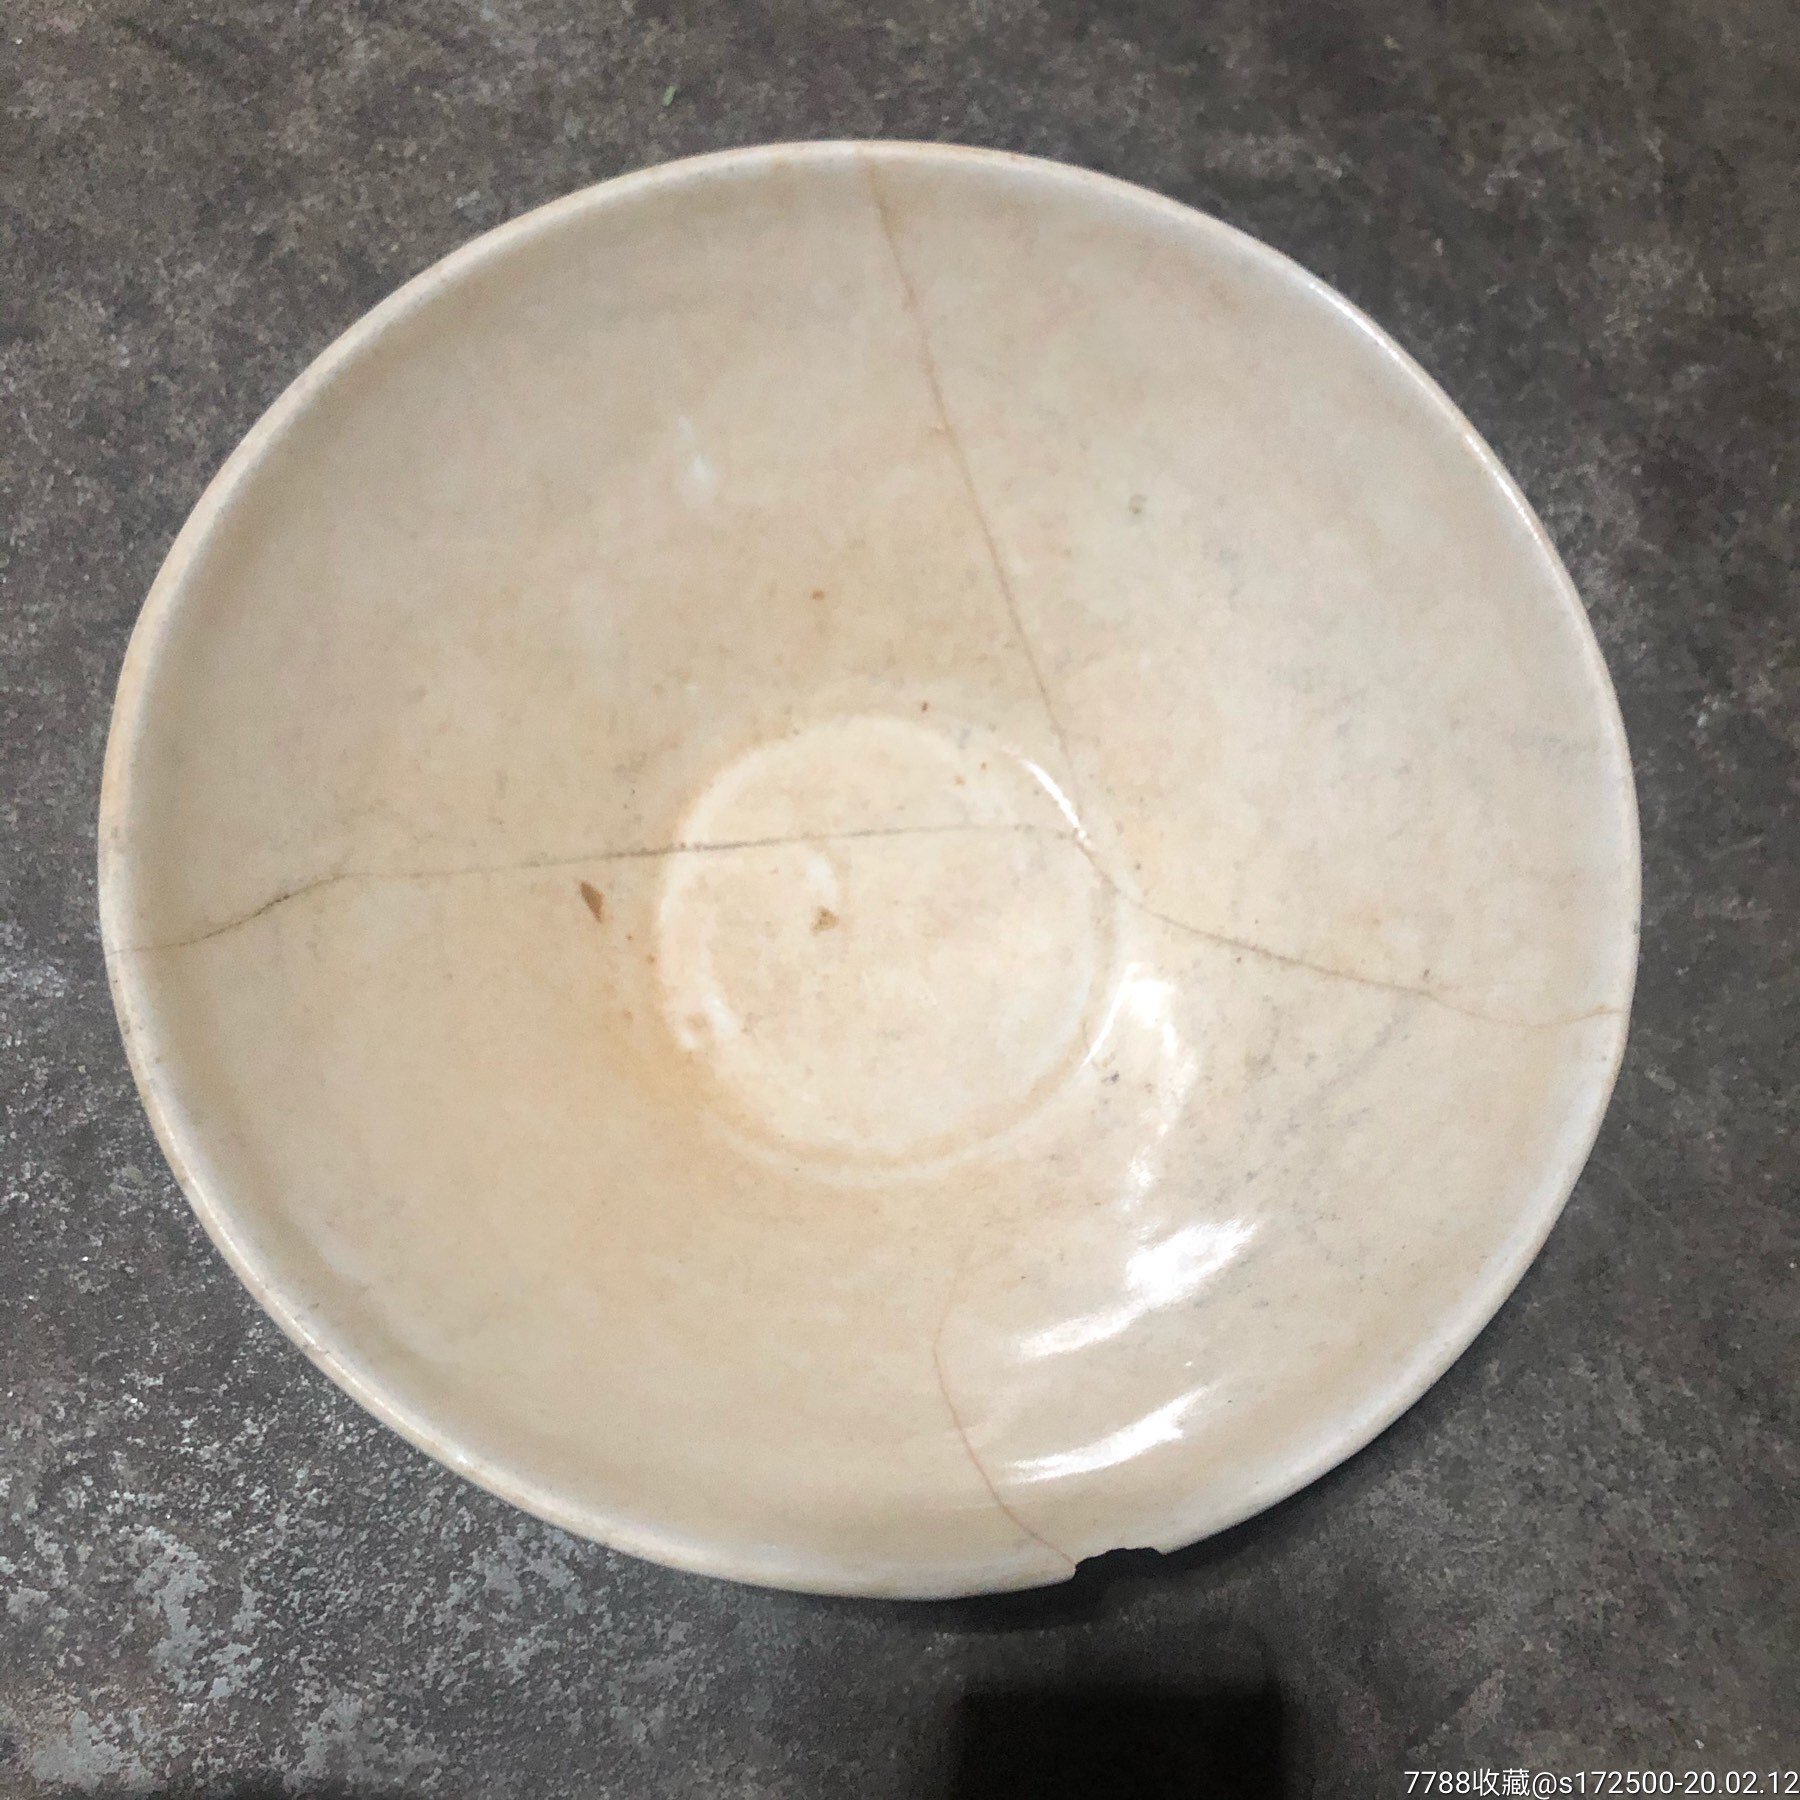 出土的宋代邢窑白瓷碗图片